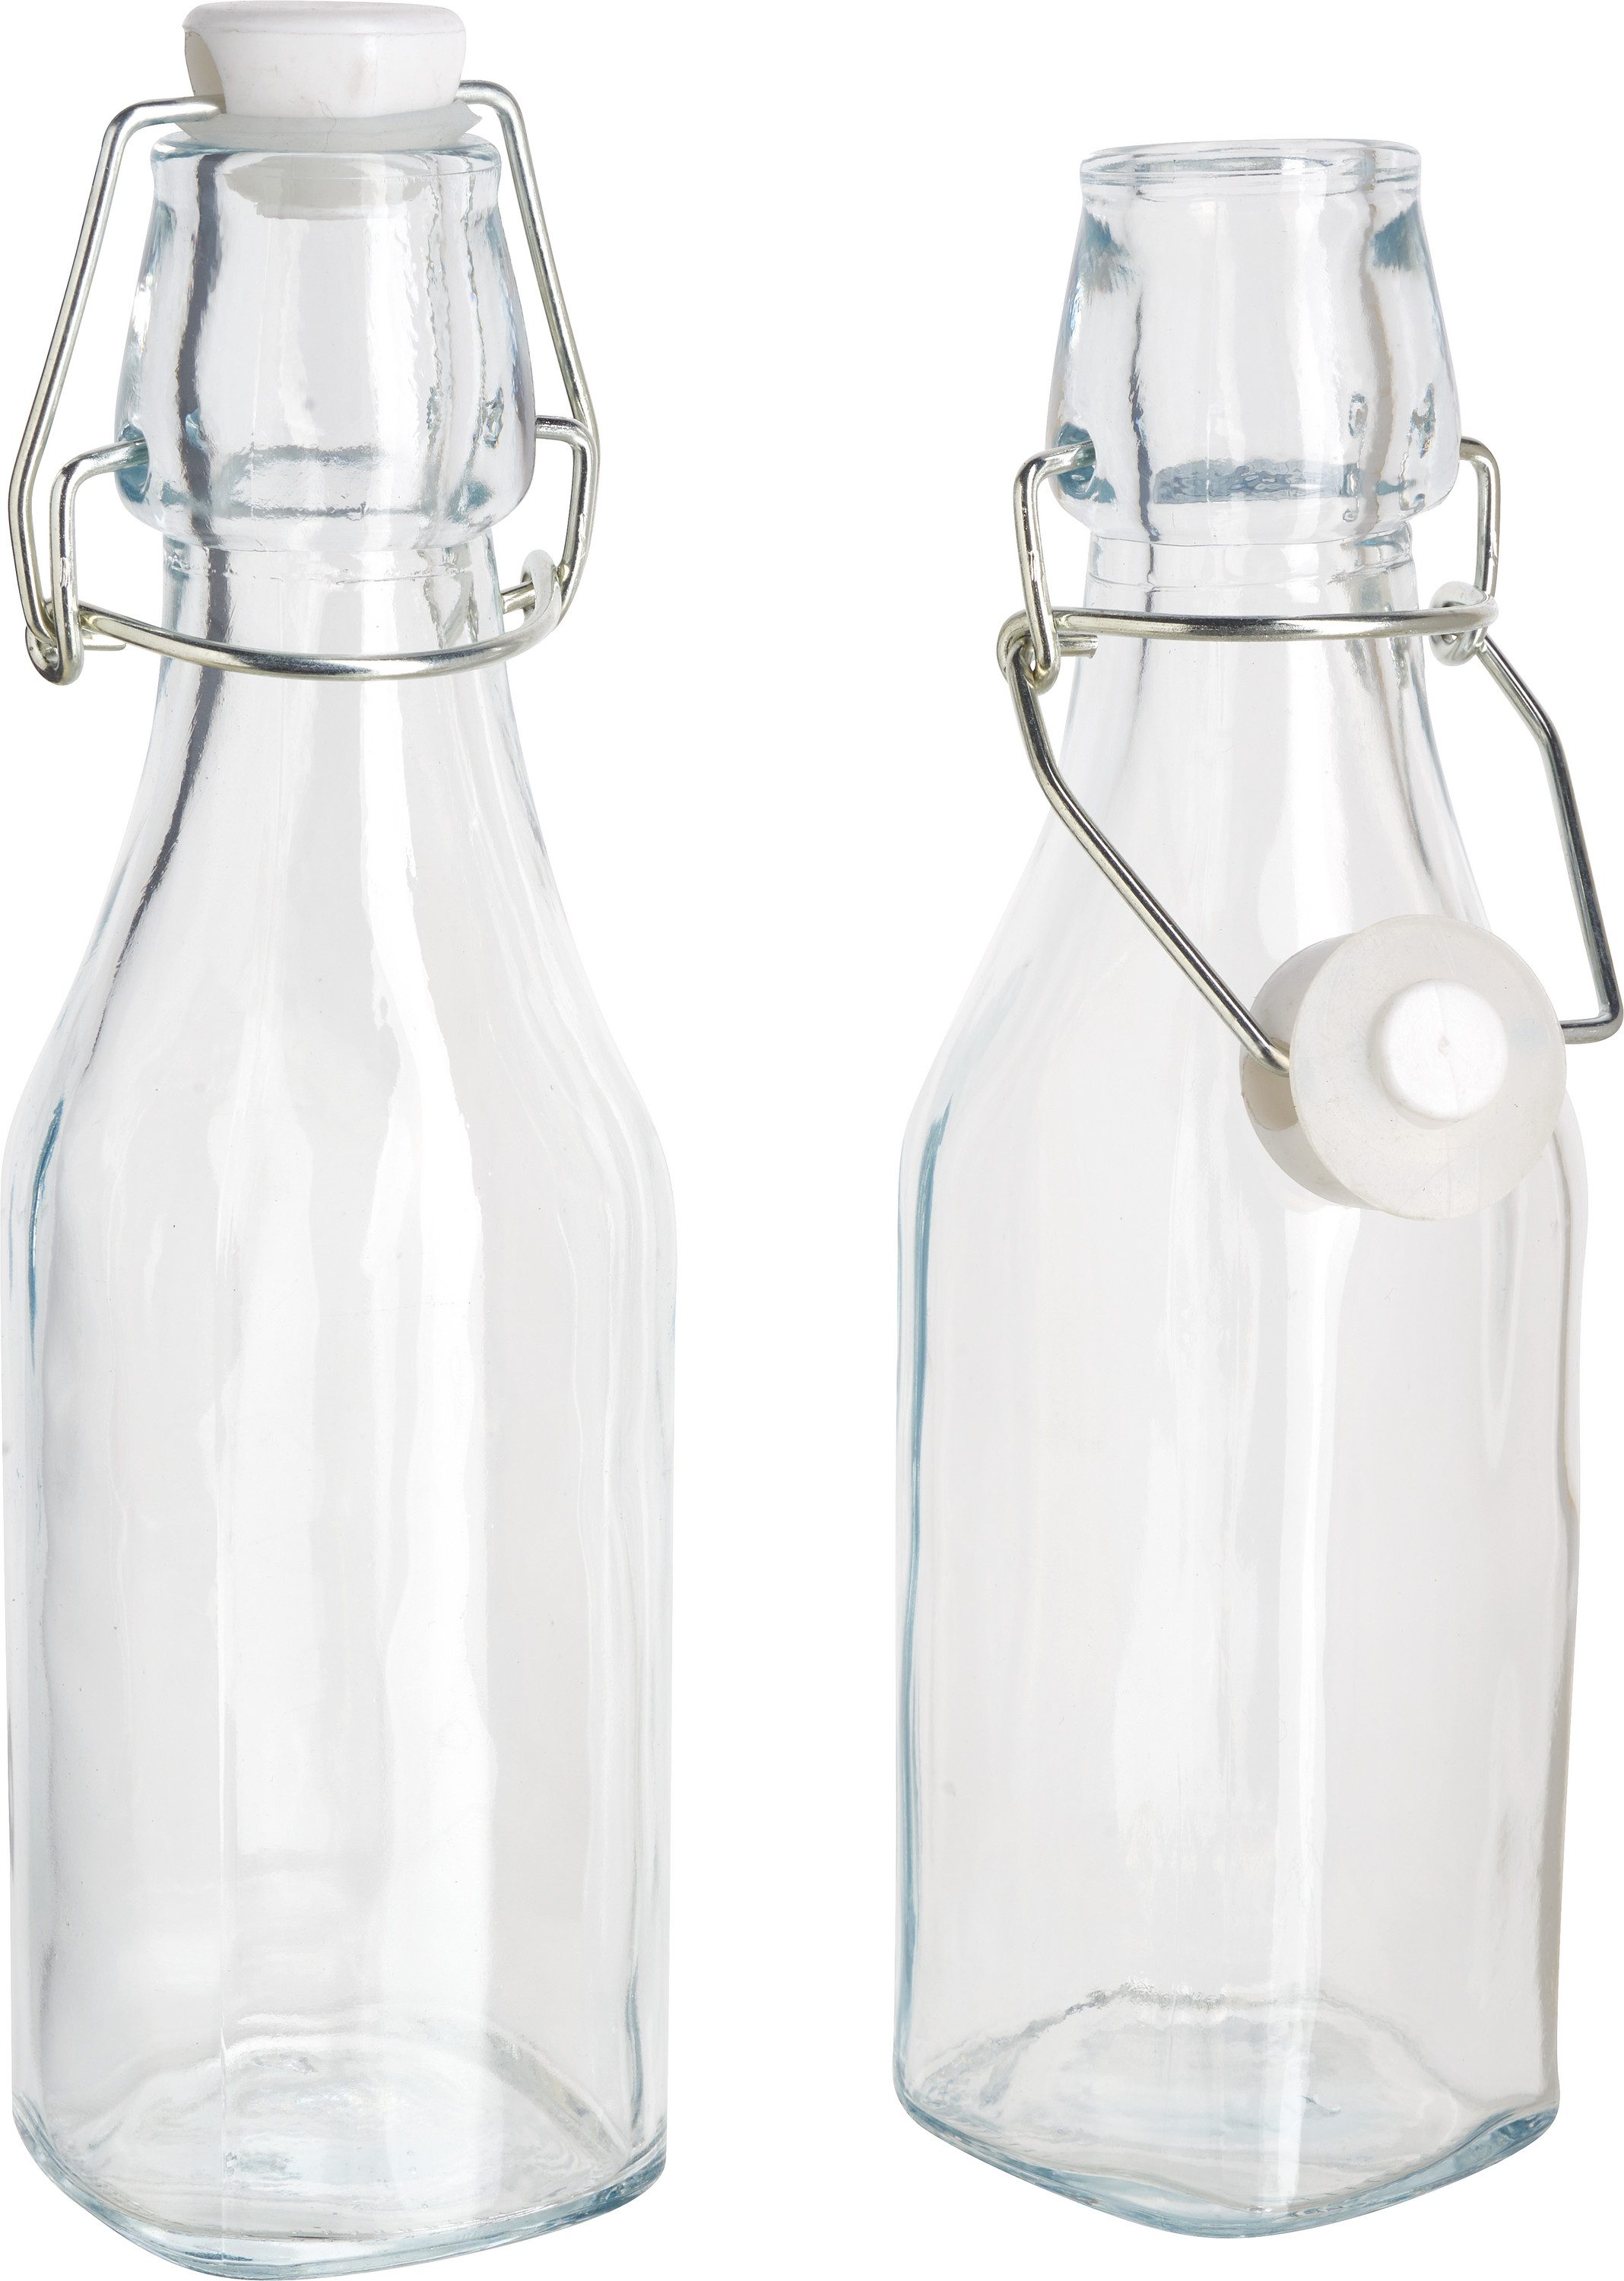 VBS Trinkflasche Glasflaschen mit Bügelverschluss, 2 Stück